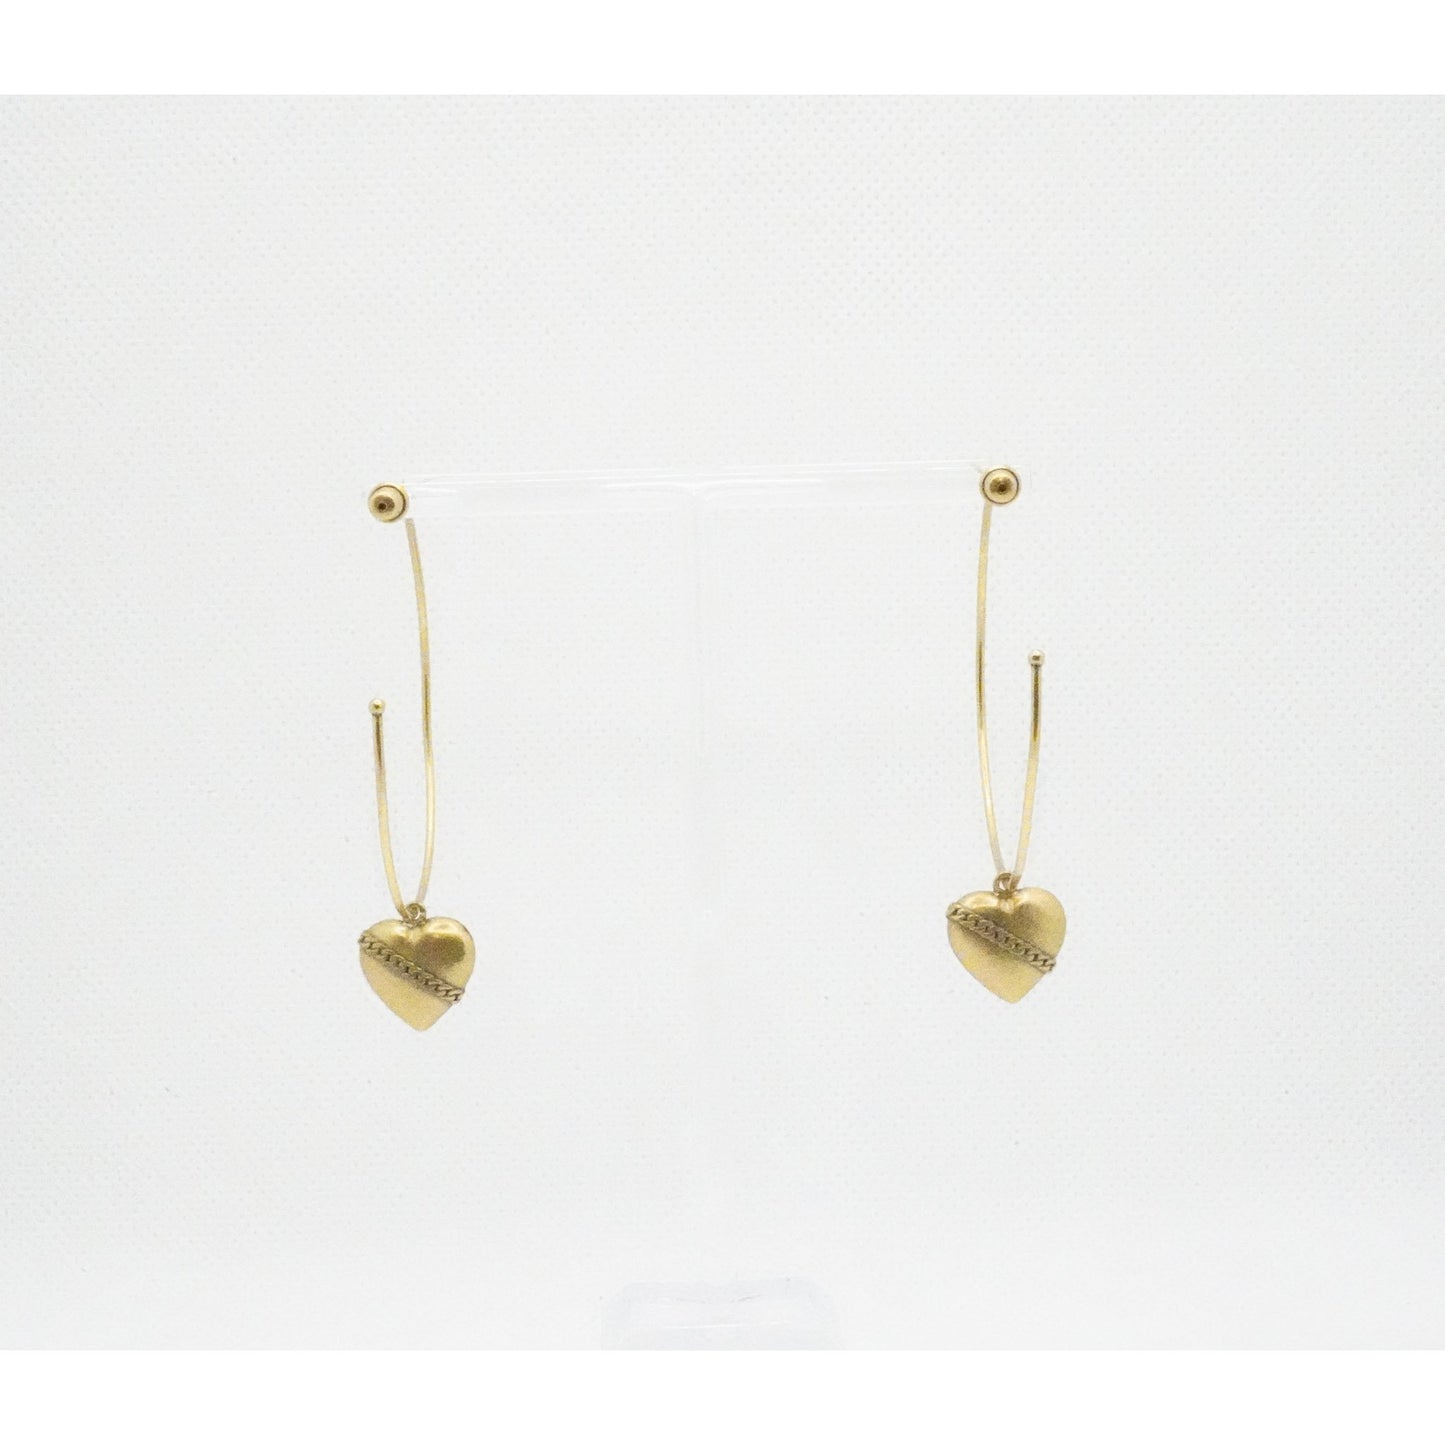 Christian Dior hoop earrings